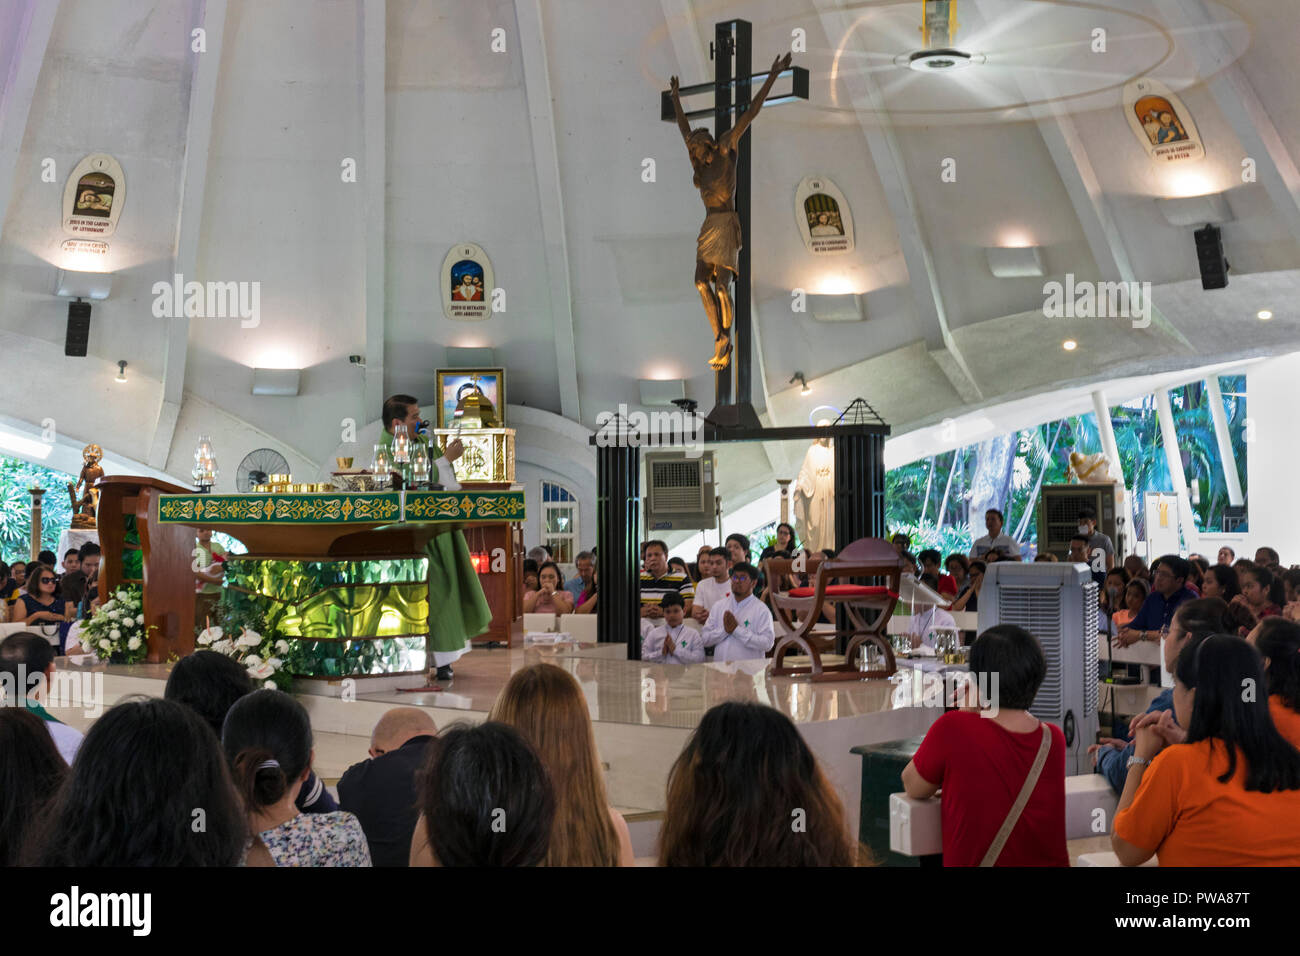 Saint Nino de Paz l'intérieur de l'Église catholique, Greenbelt, Ayala Center, Greenbelt, Manille, Philippines Banque D'Images